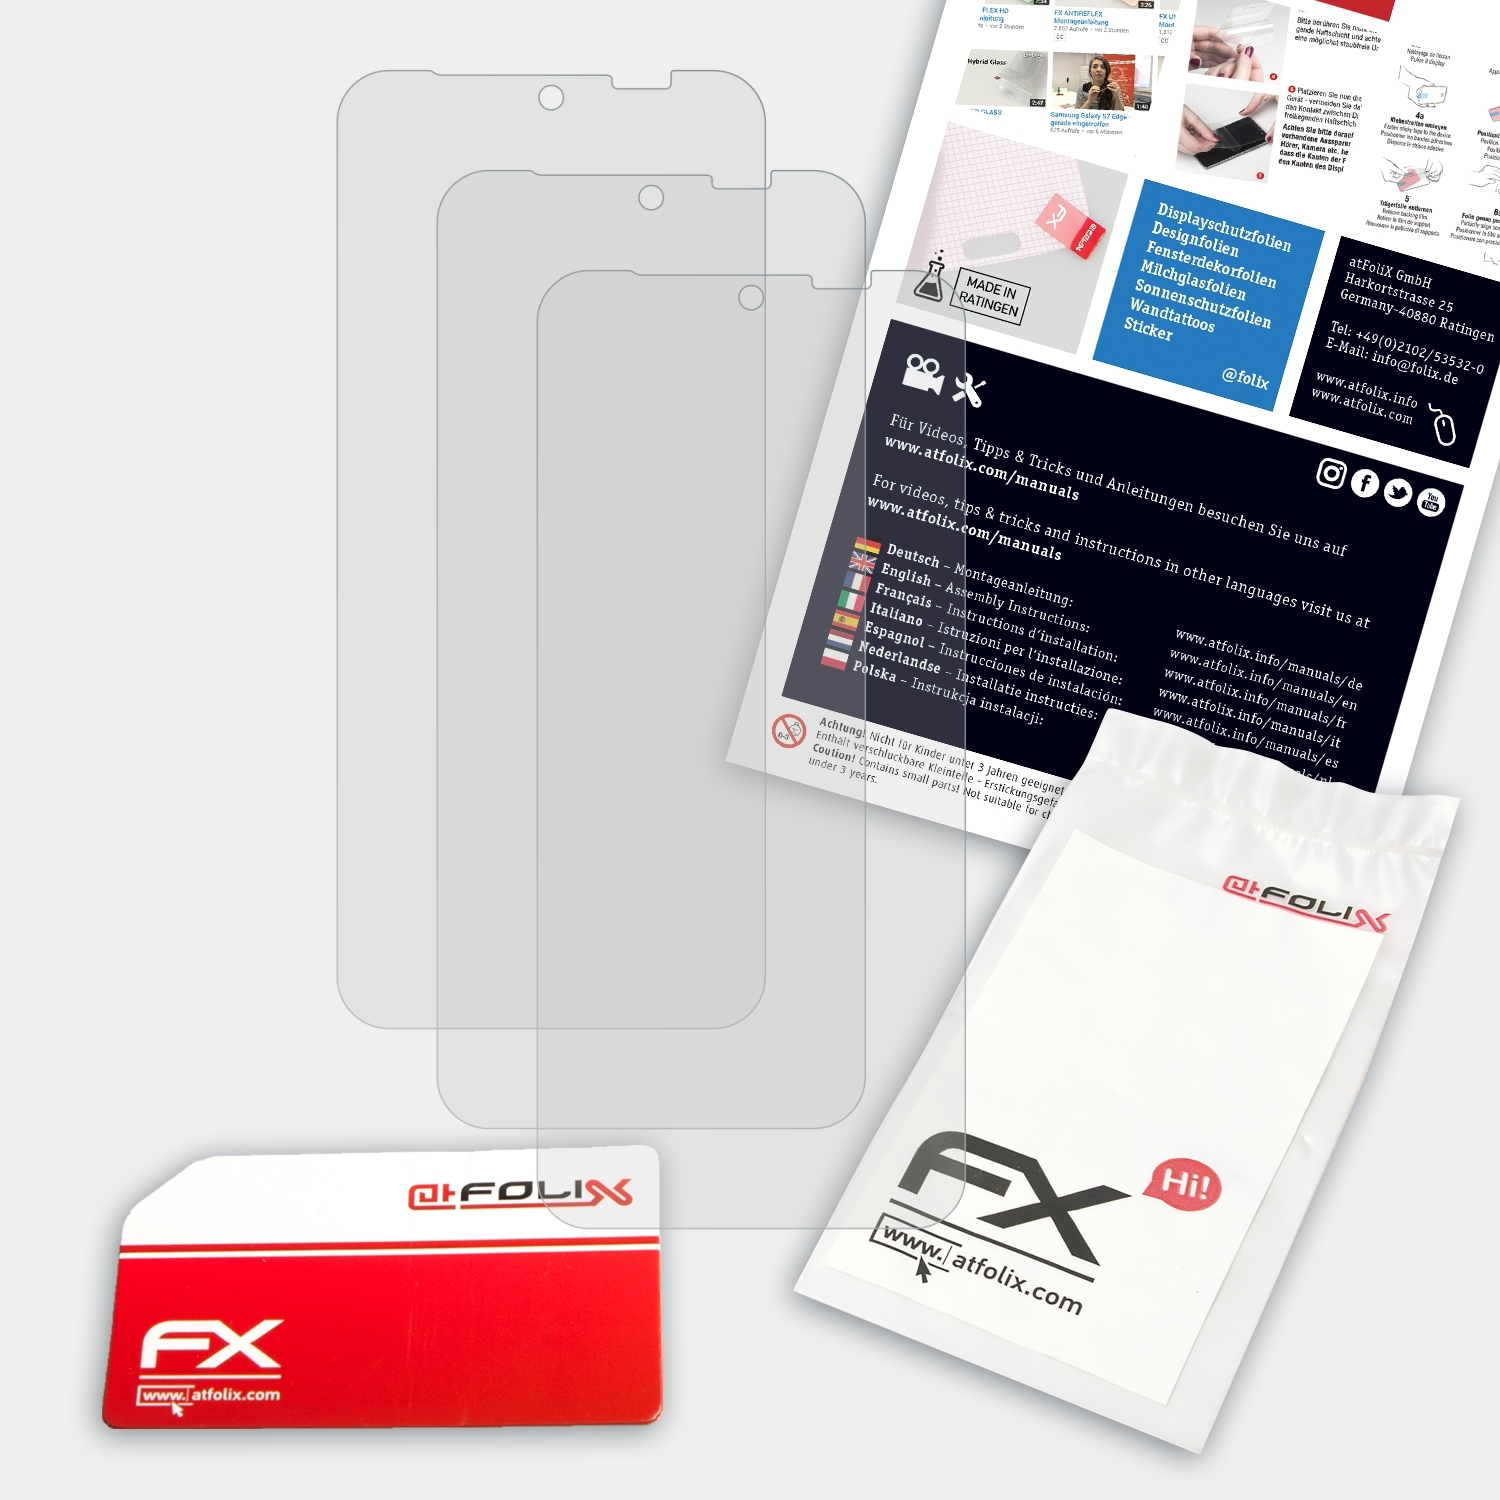 Fairphone 3x ATFOLIX 4) Displayschutz(für FX-Antireflex